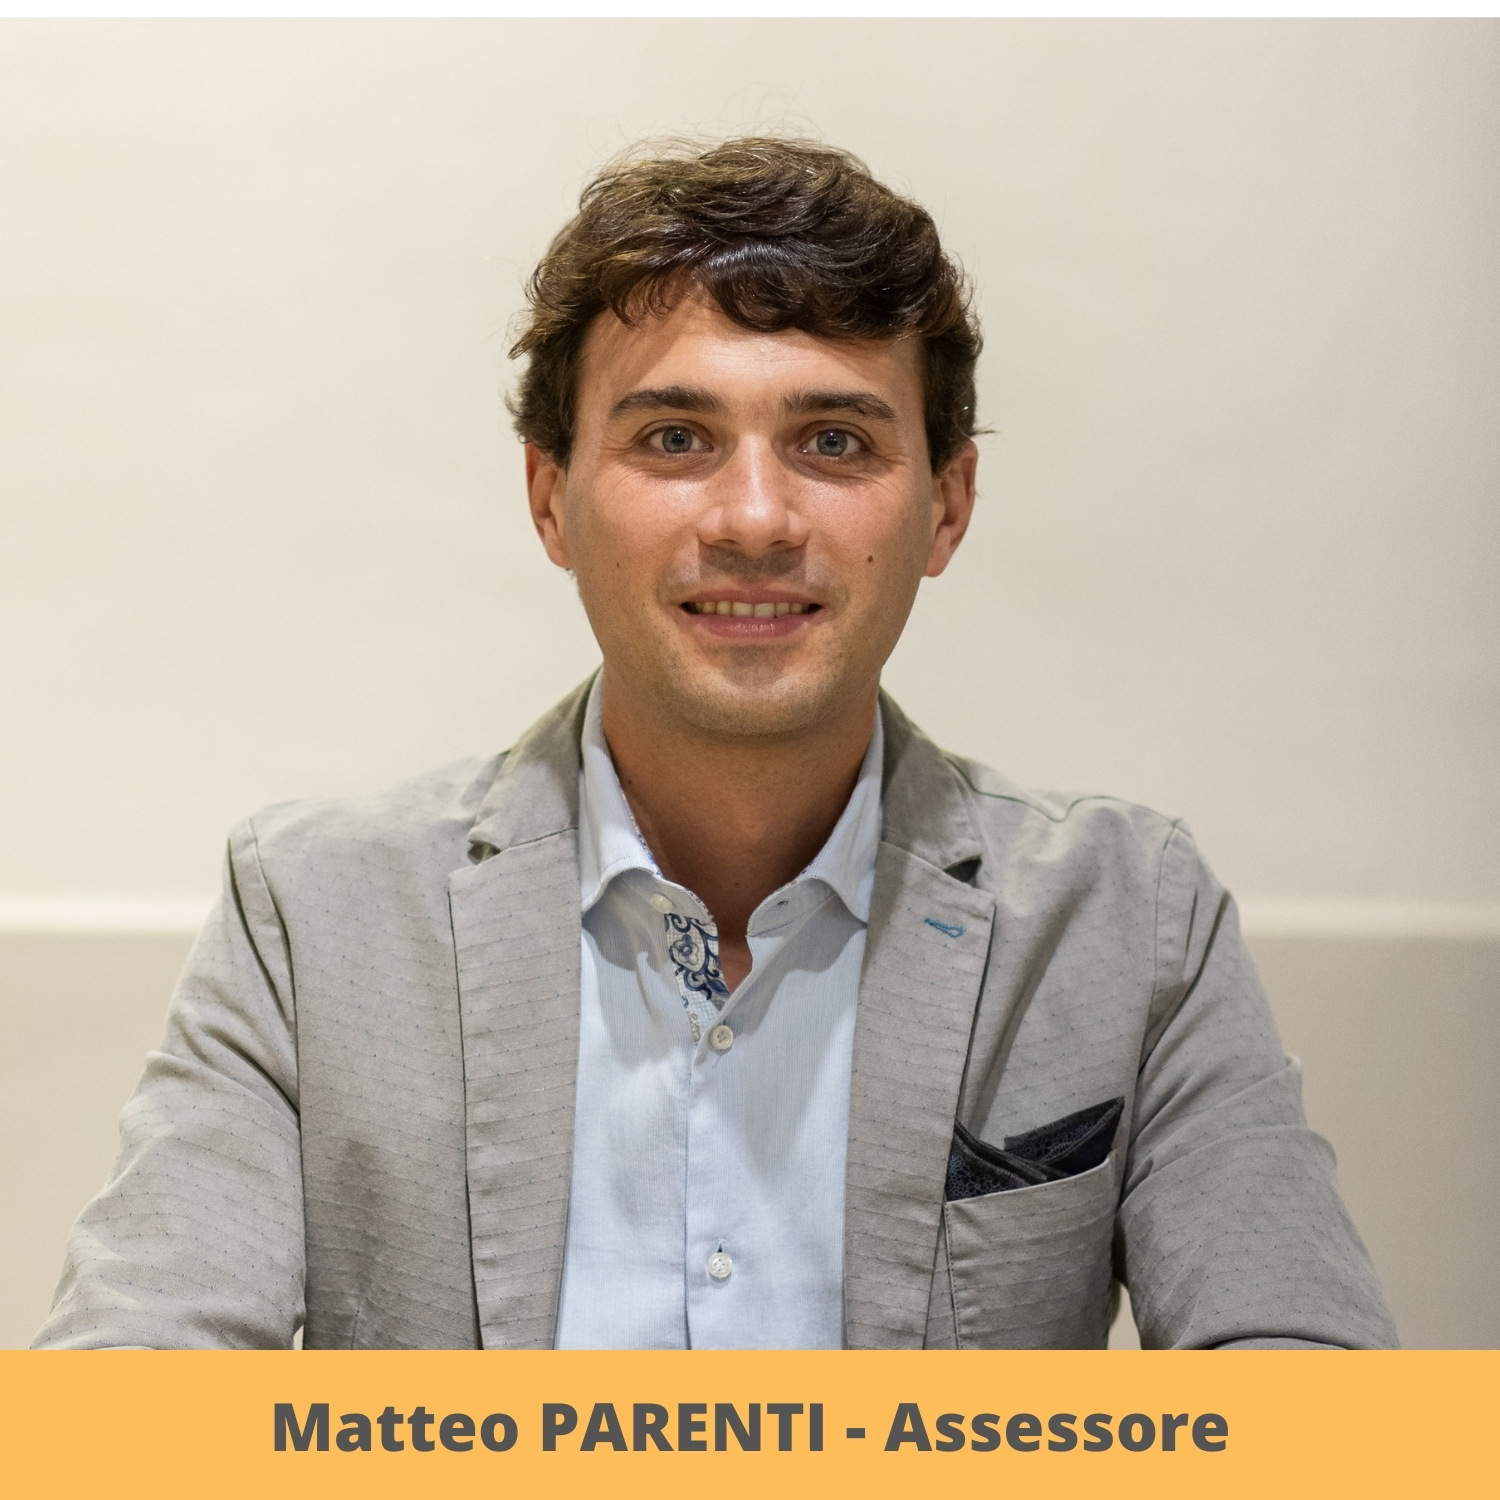 Matteo PARENTI (Assessore)